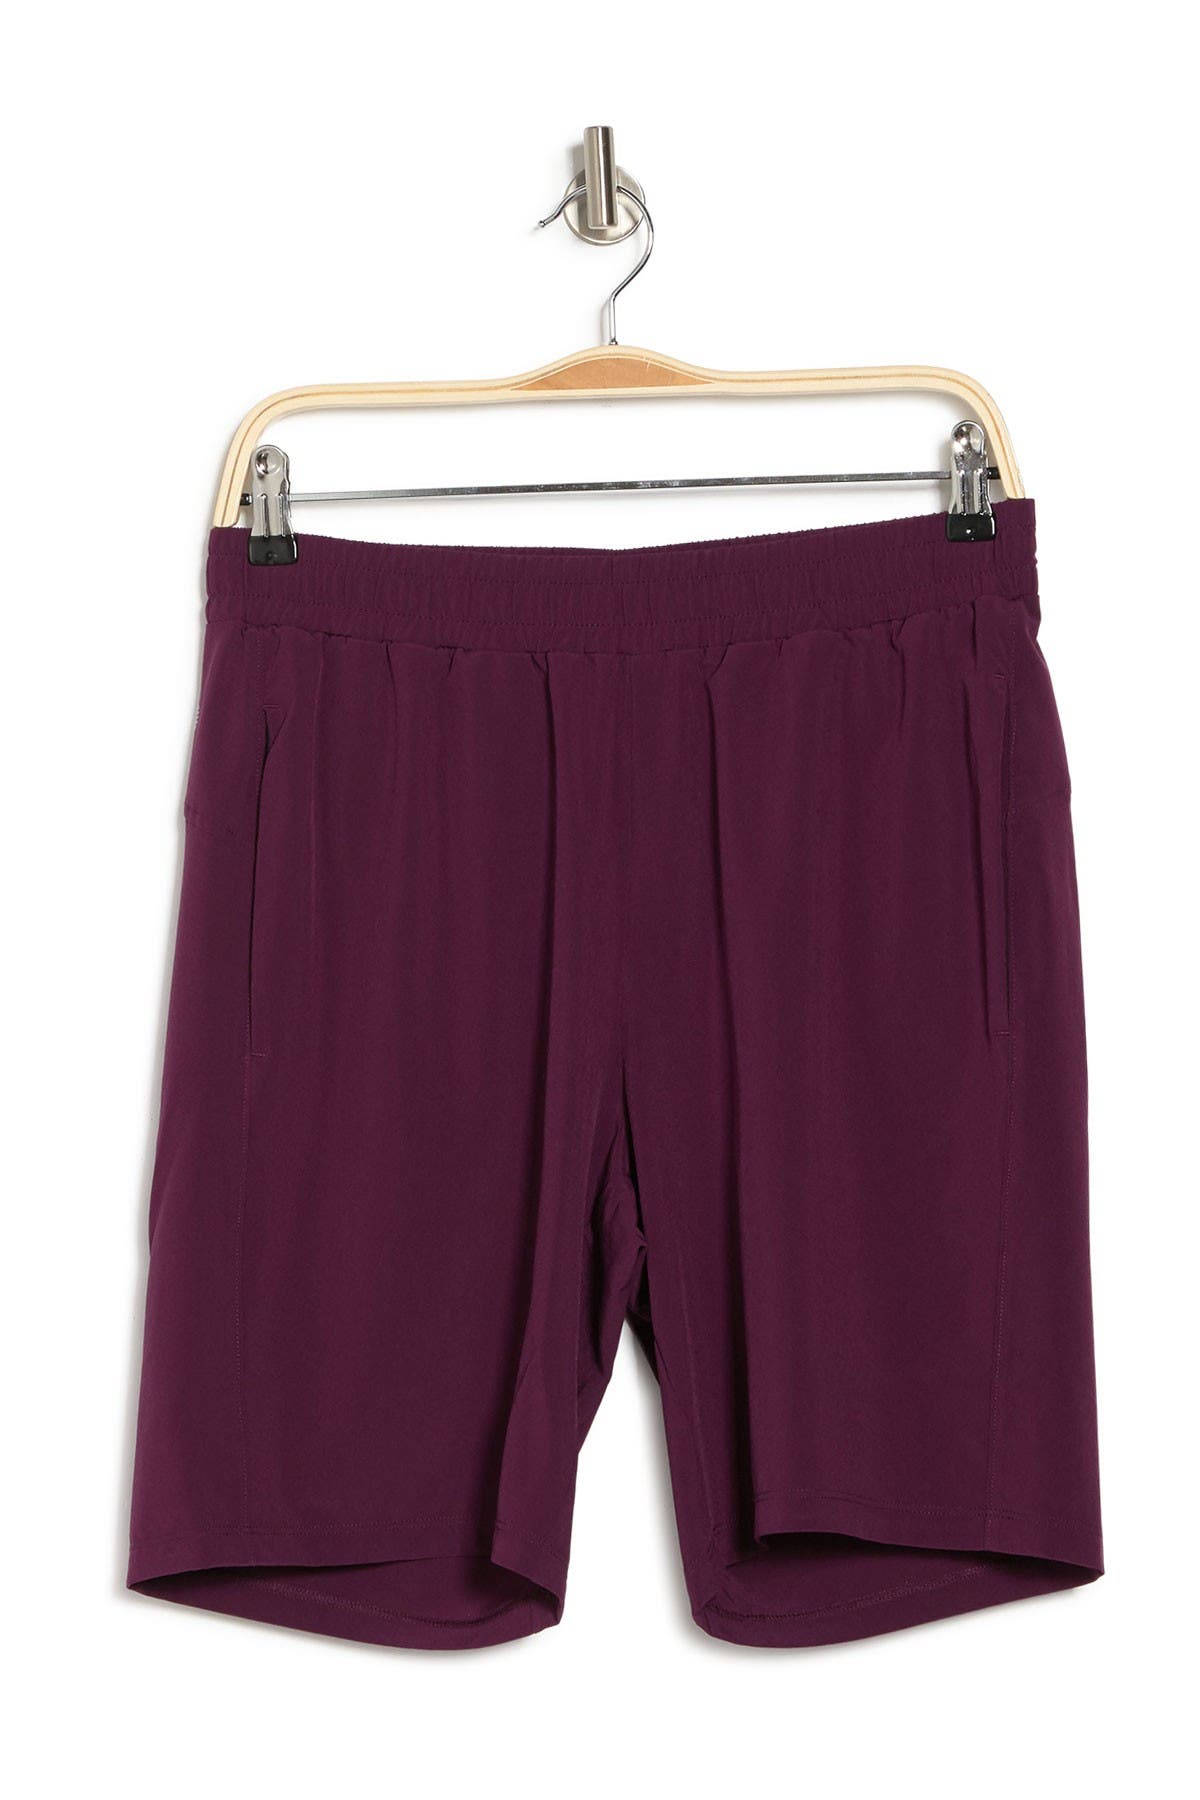 Z By Zella Traverse Woven Shorts In Purple Claret